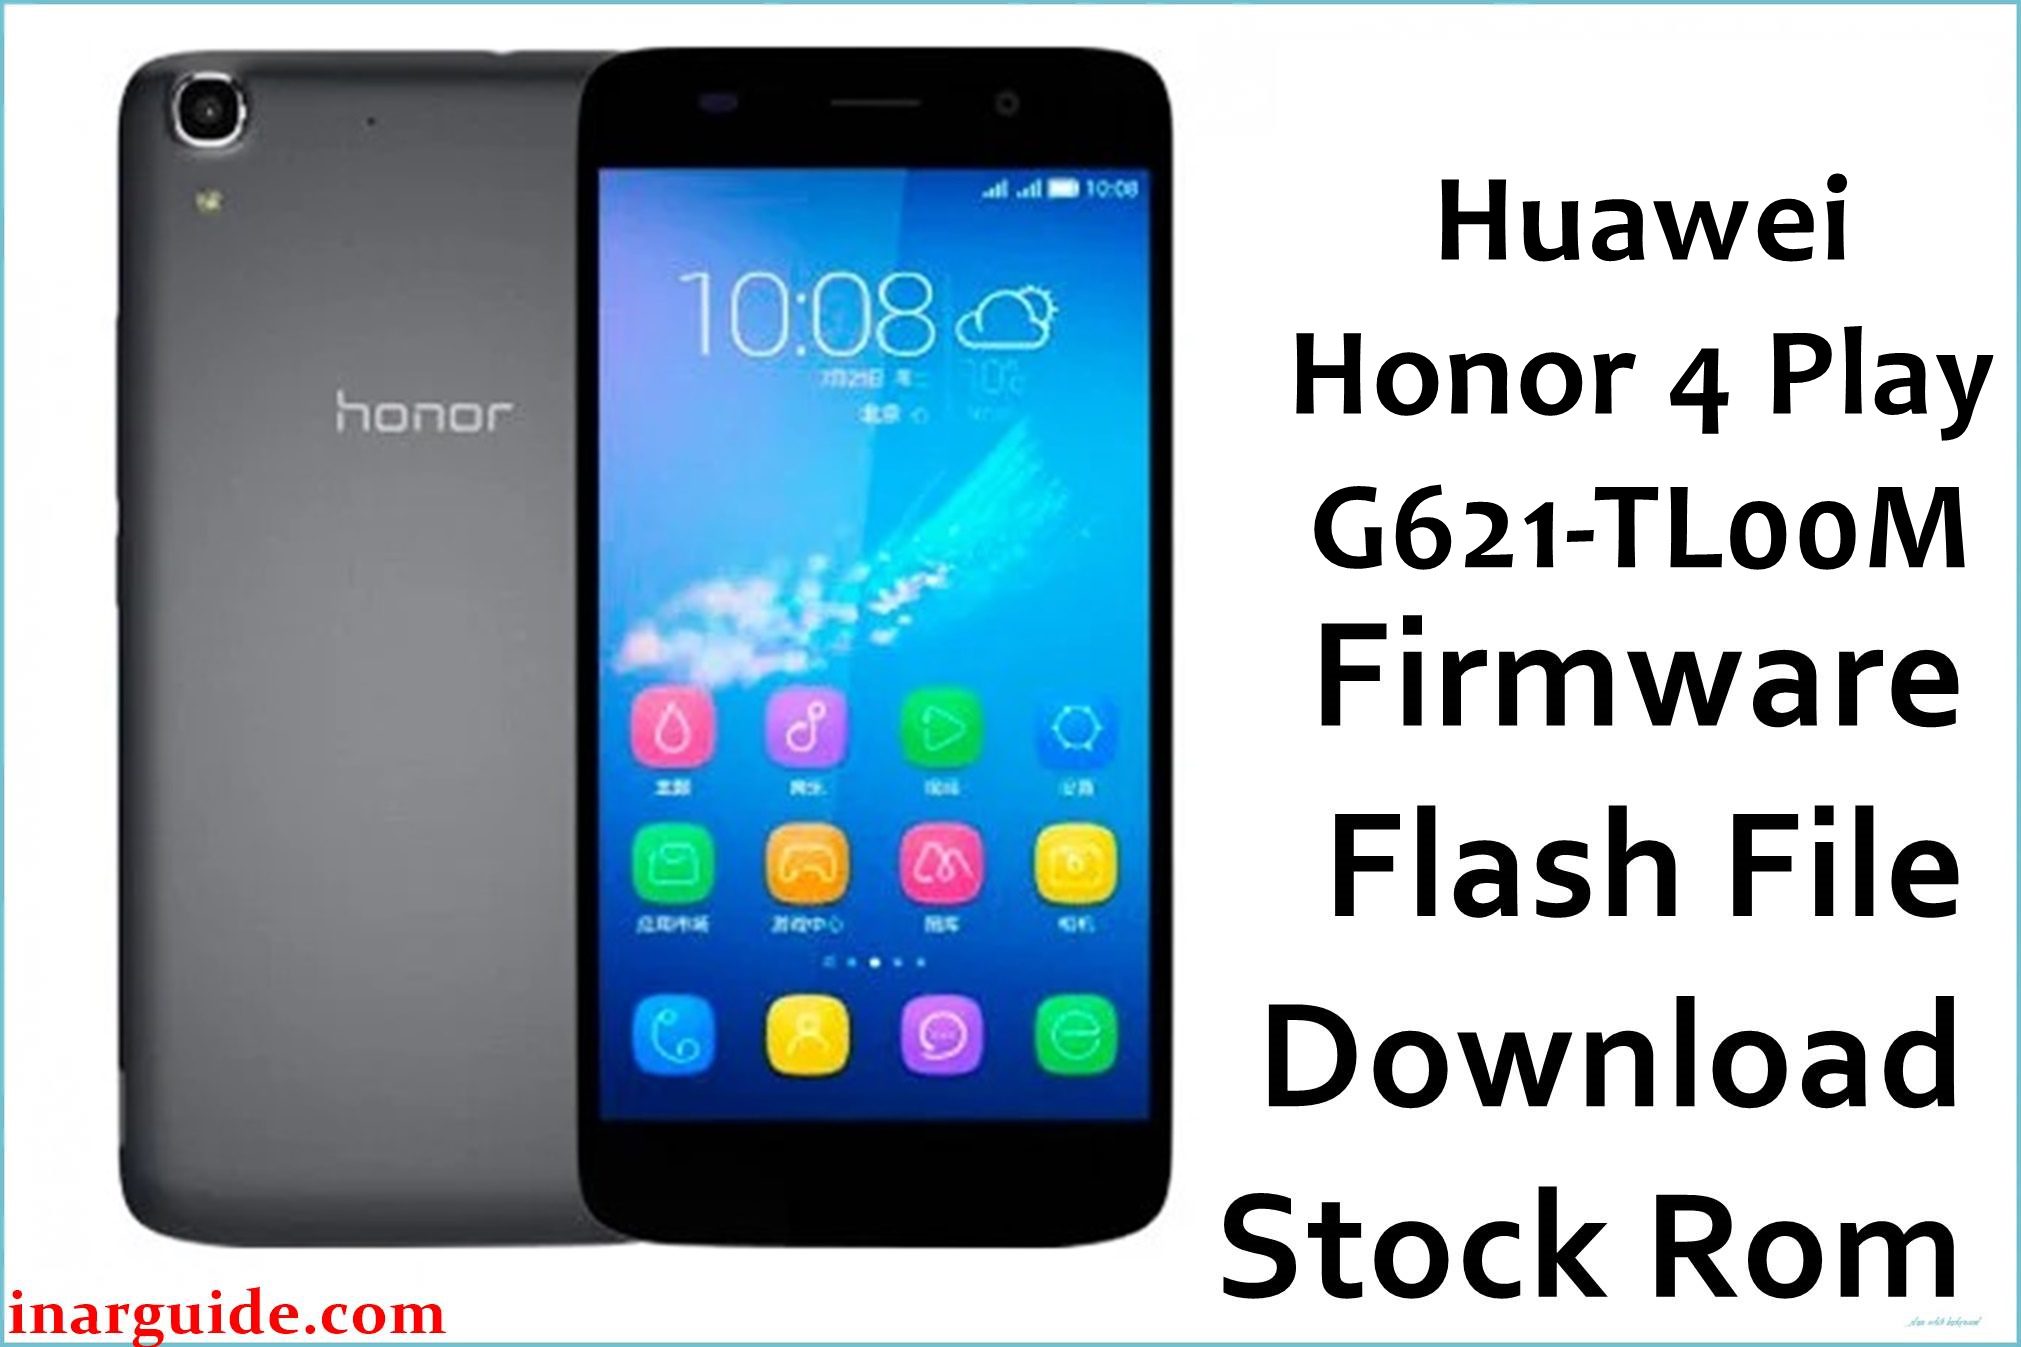 Huawei Honor 4 Play G621 TL00M